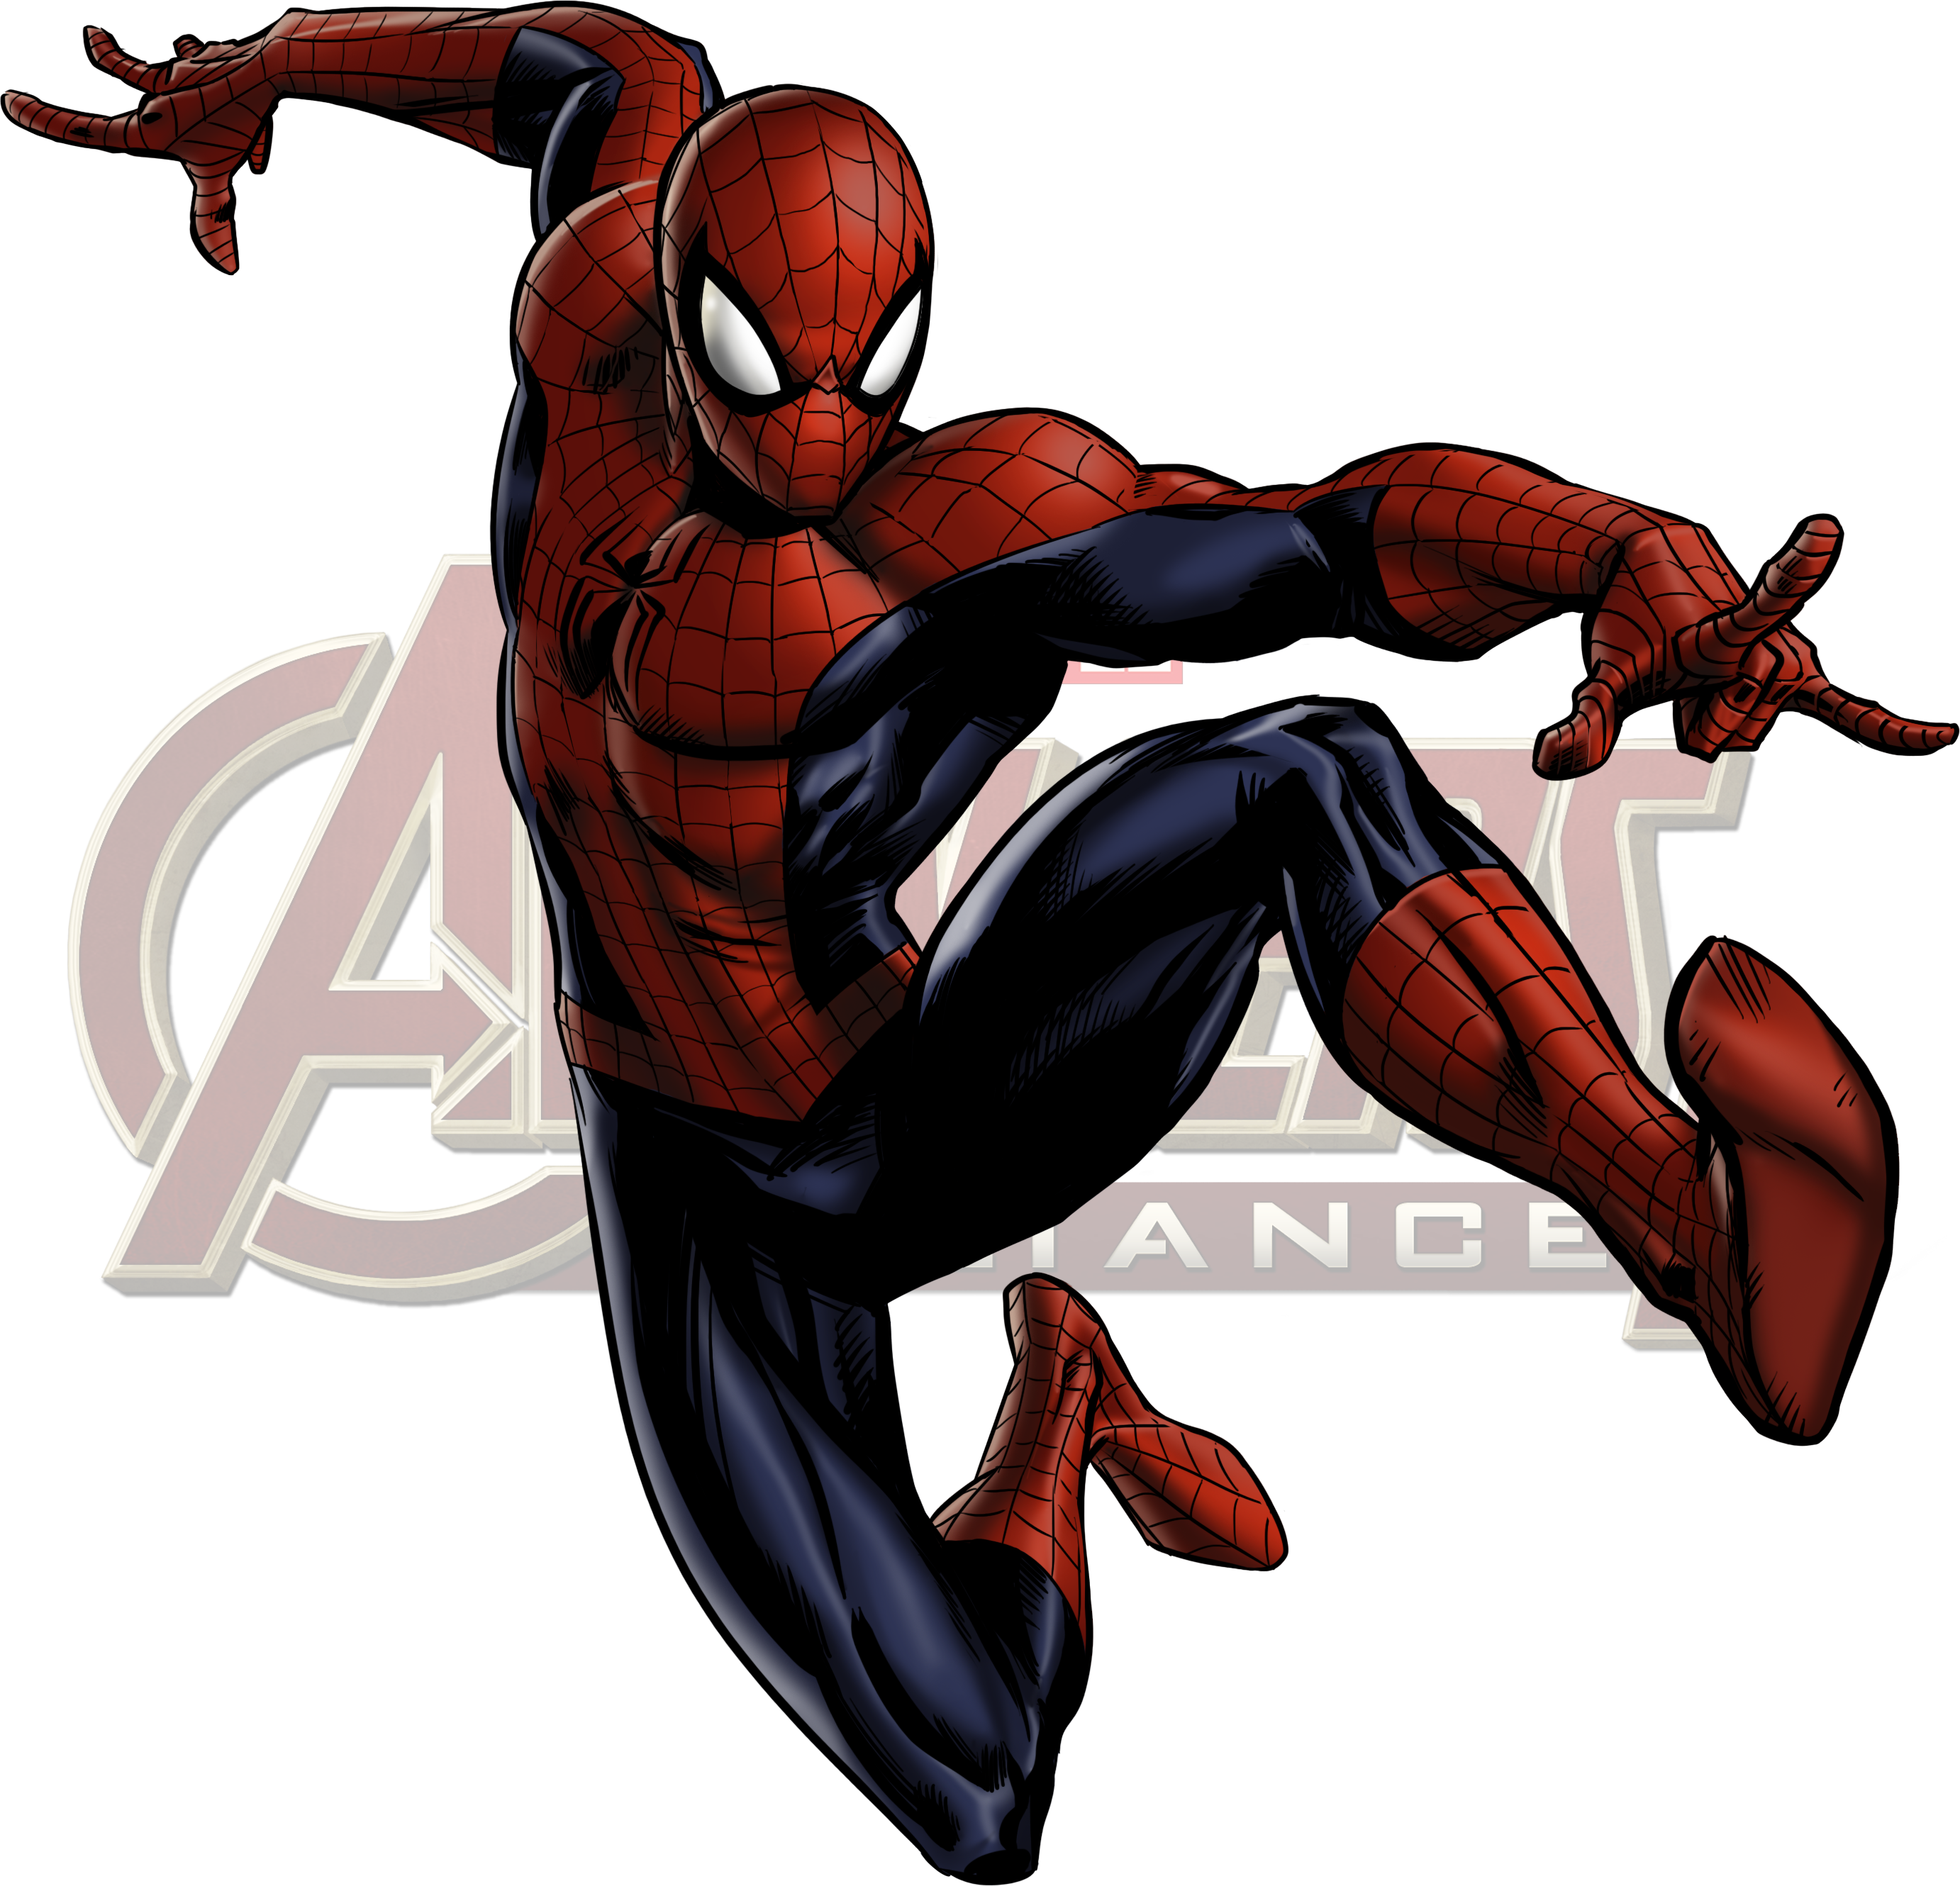 spider man avengers 2 on set